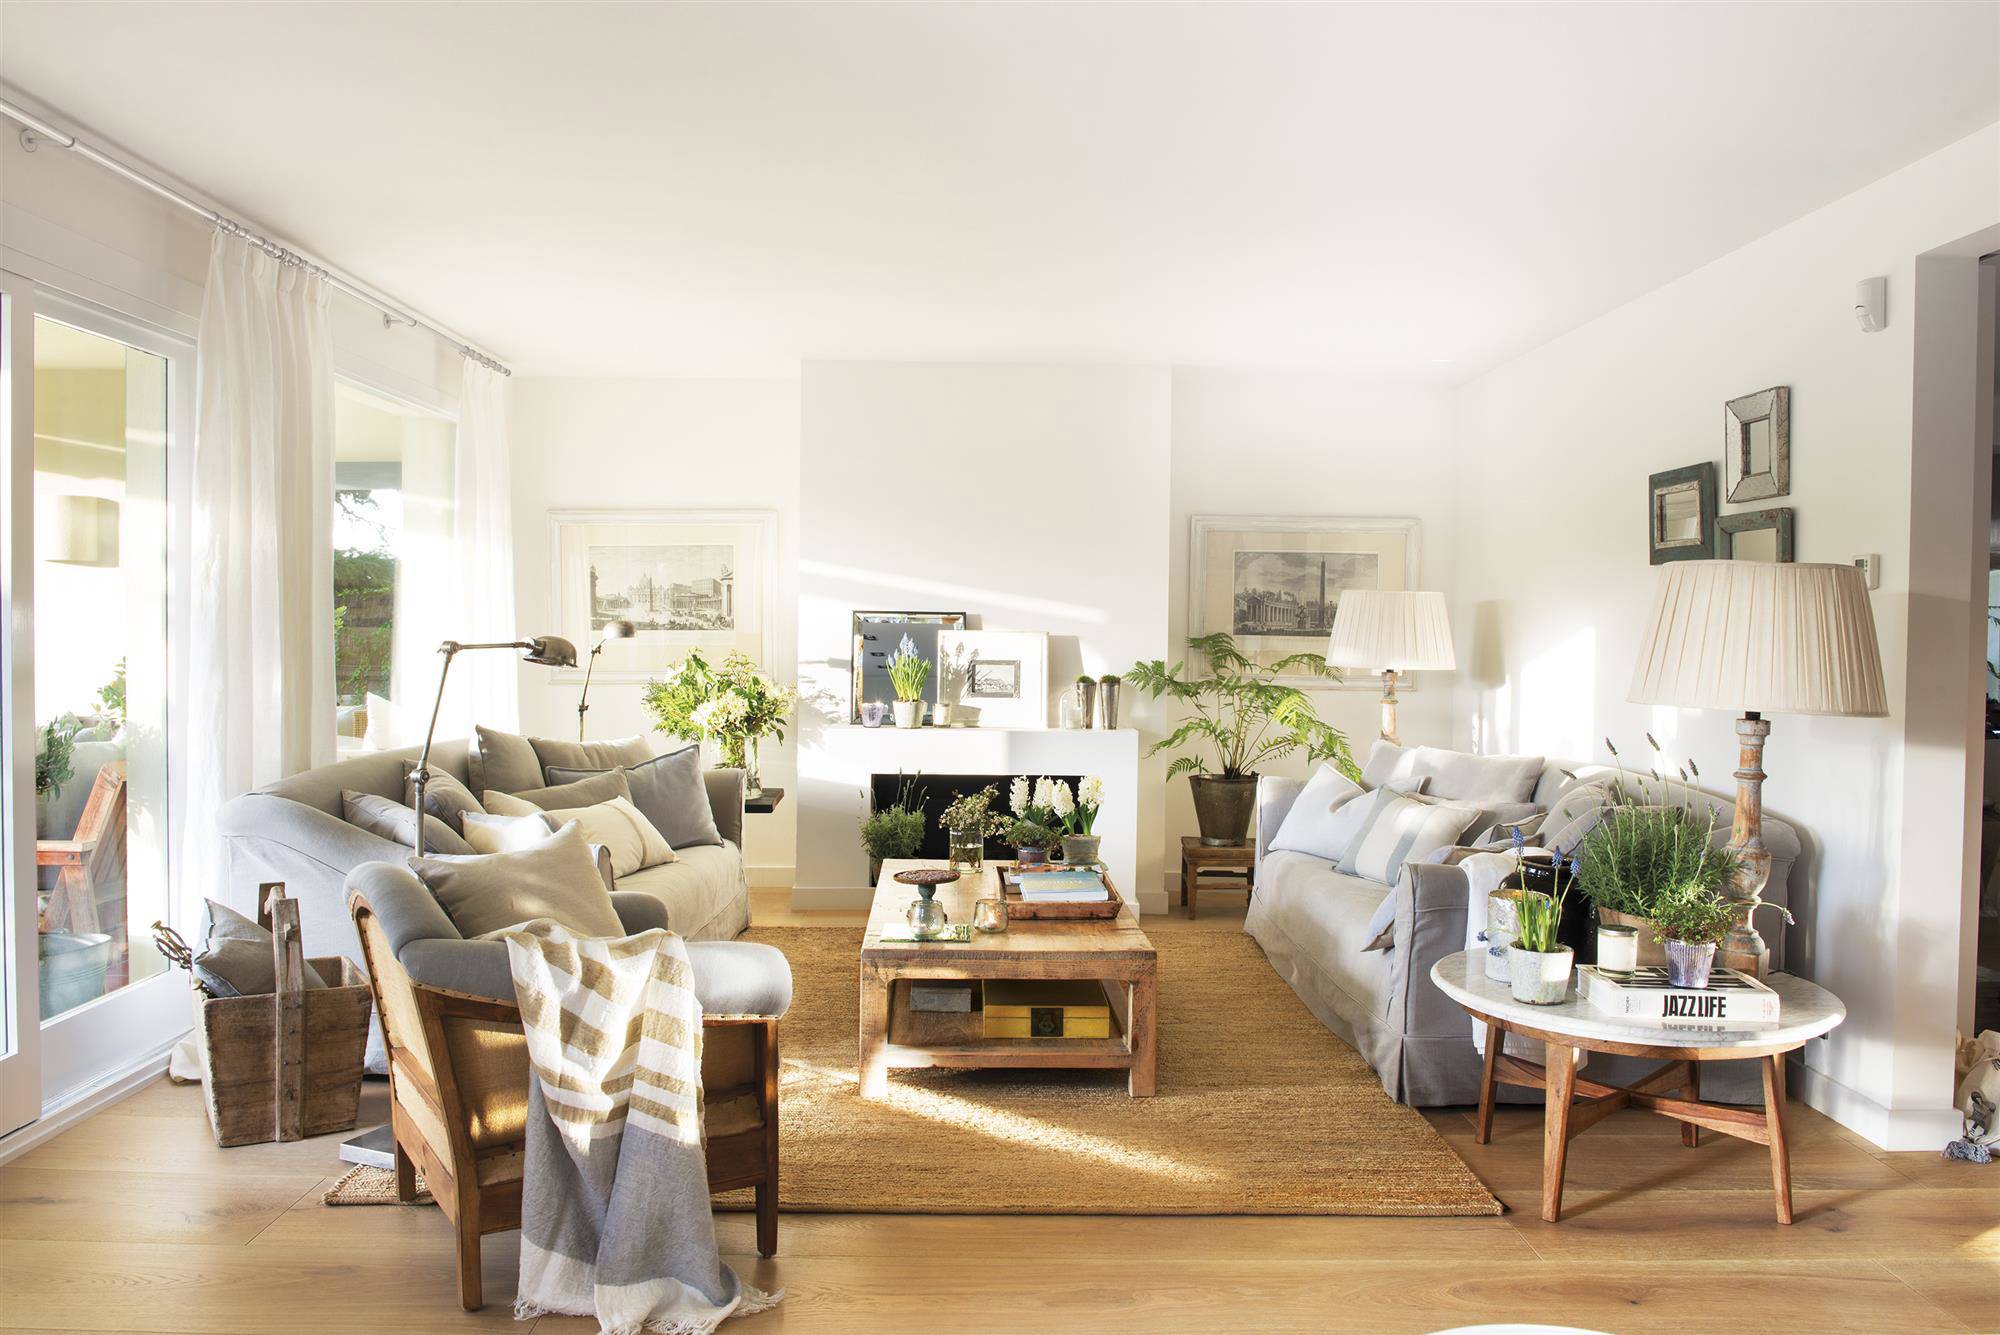 Salón nórdico con chimenea blanca, sofás y butaca de color gris, mesa de centro y auxiliar de madera y alfombra de fibras.